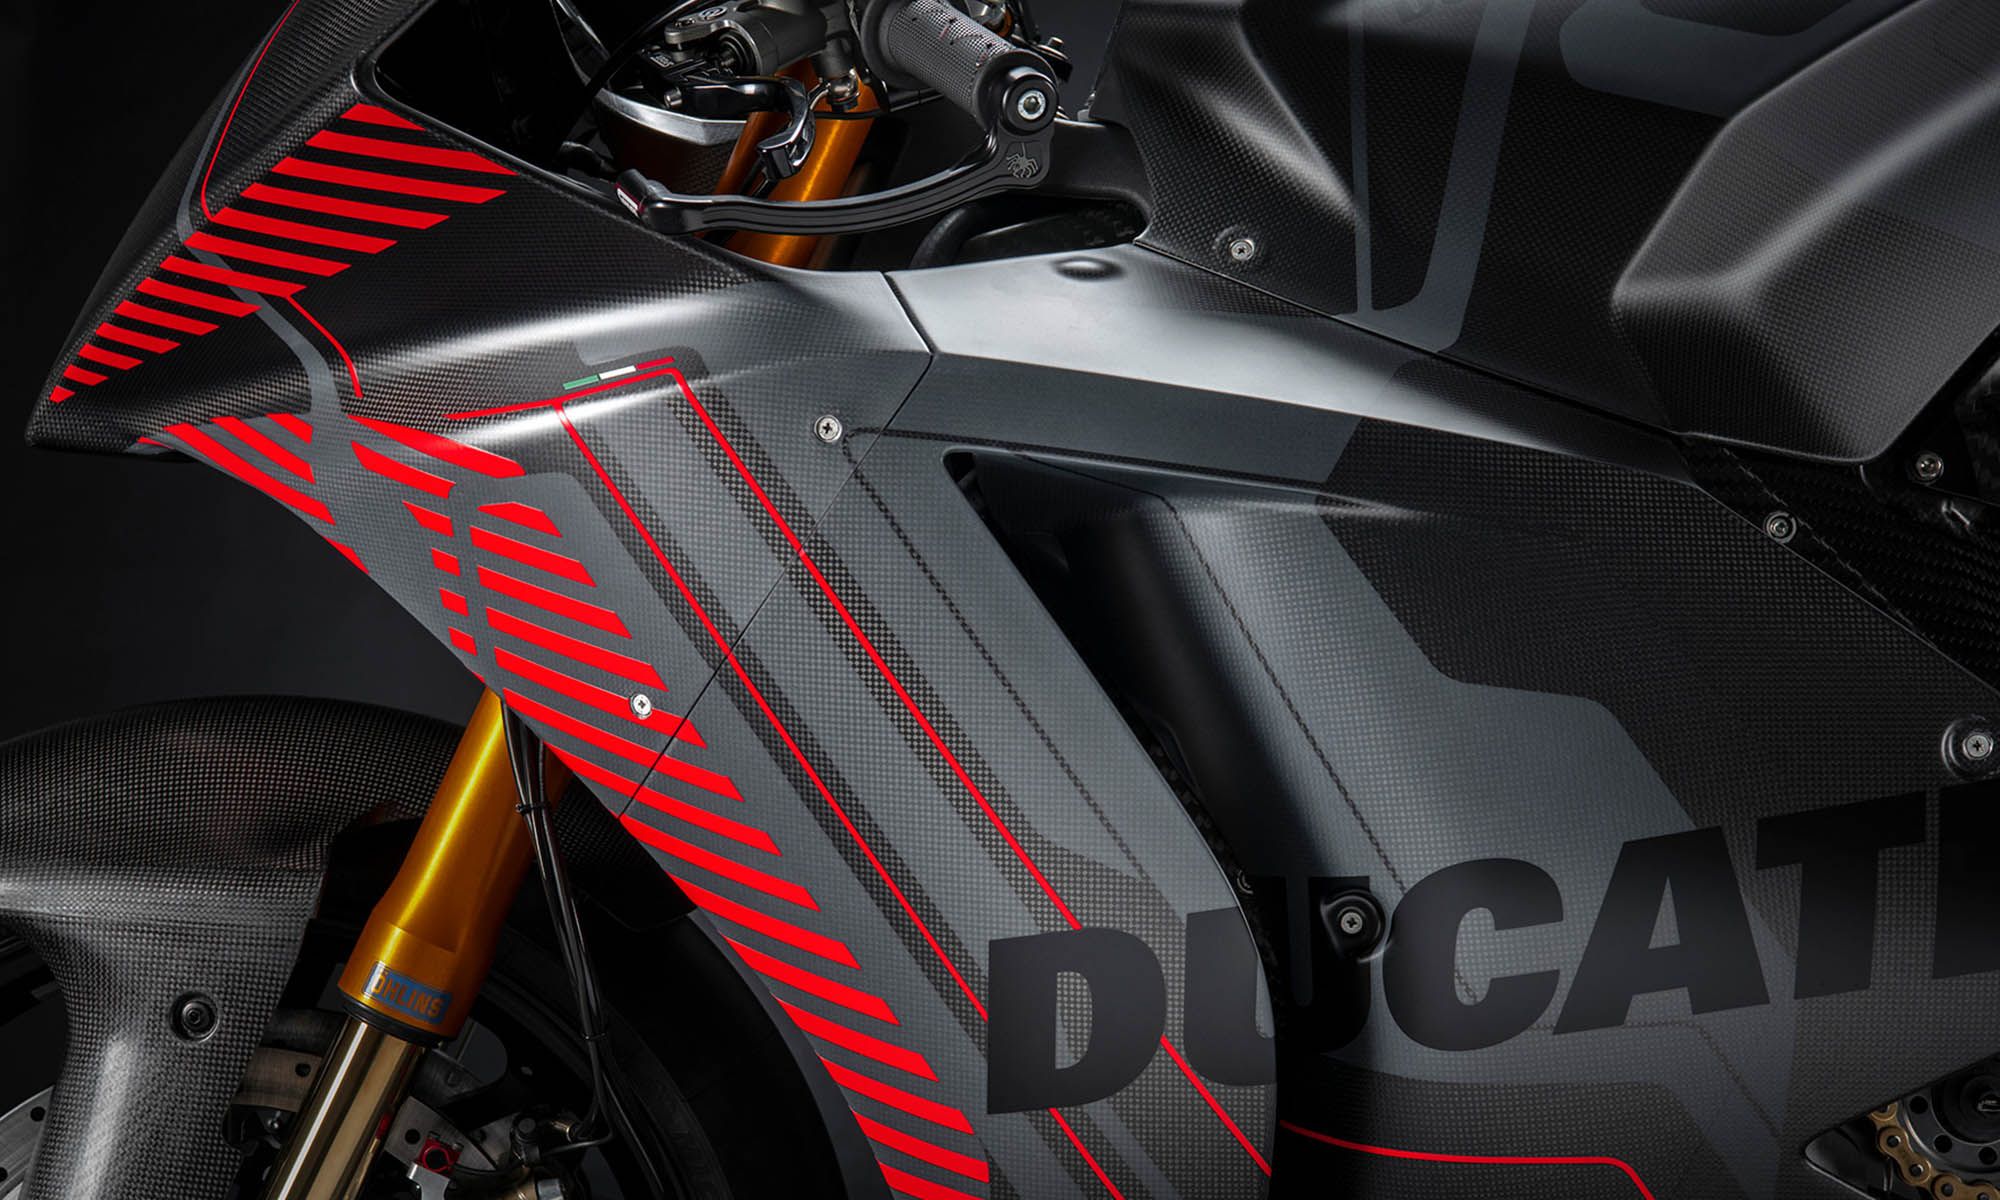 La Ducati V21L será la que usen los equipos que compiten en la MotoE a partir de este año, pero su tecnología todavía no está a la altura de lo que la marca requiere para sus motos de calle.